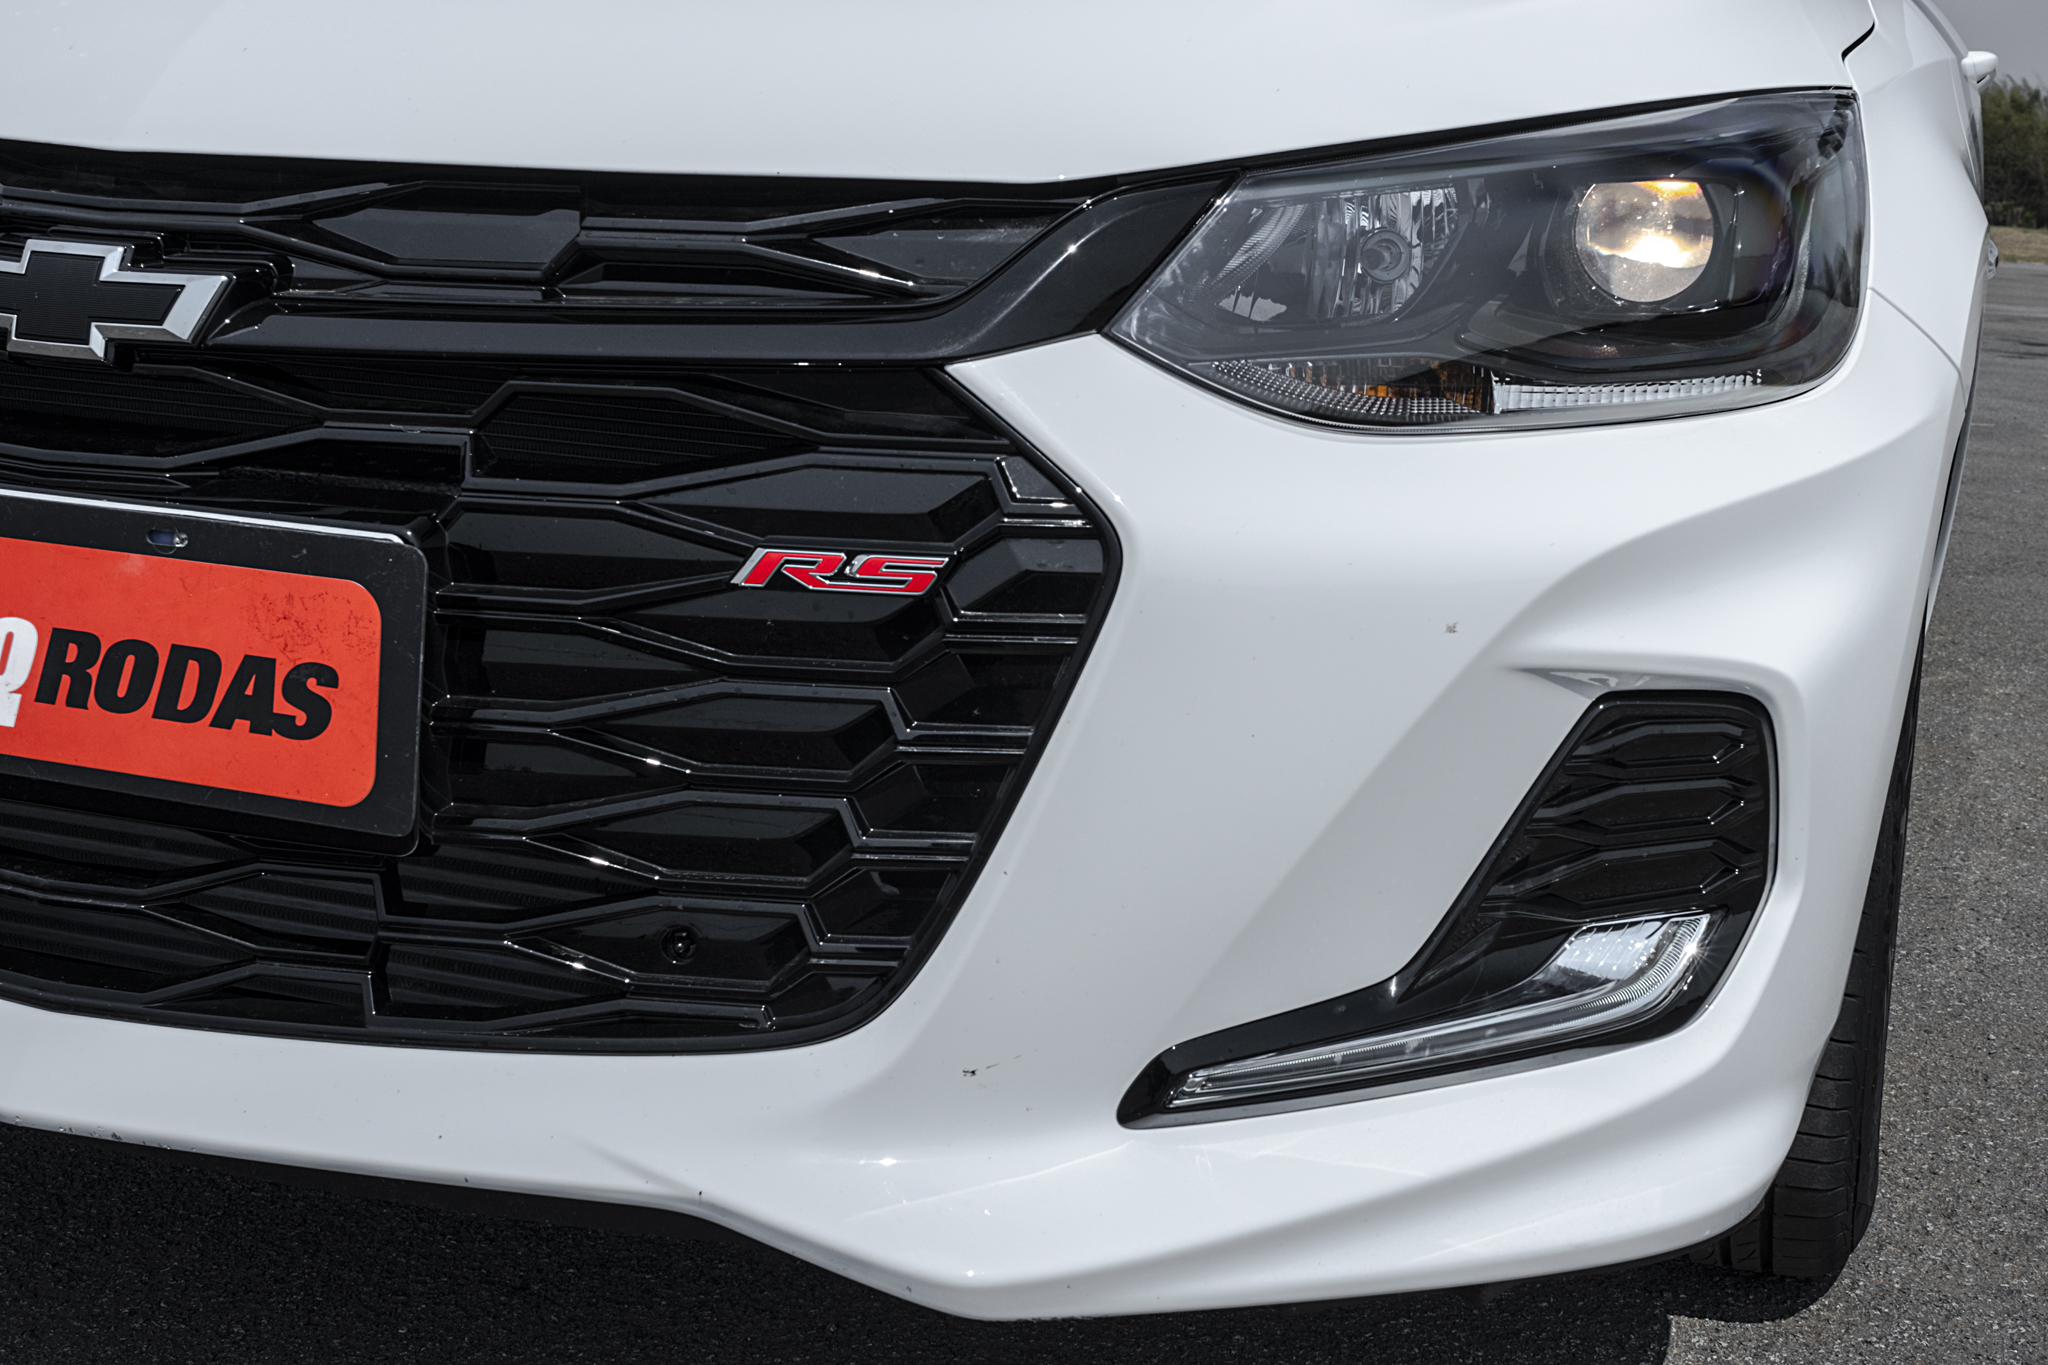 Teste: Novo Chevrolet Onix RS tem visual instigante, mas emoção é limitada